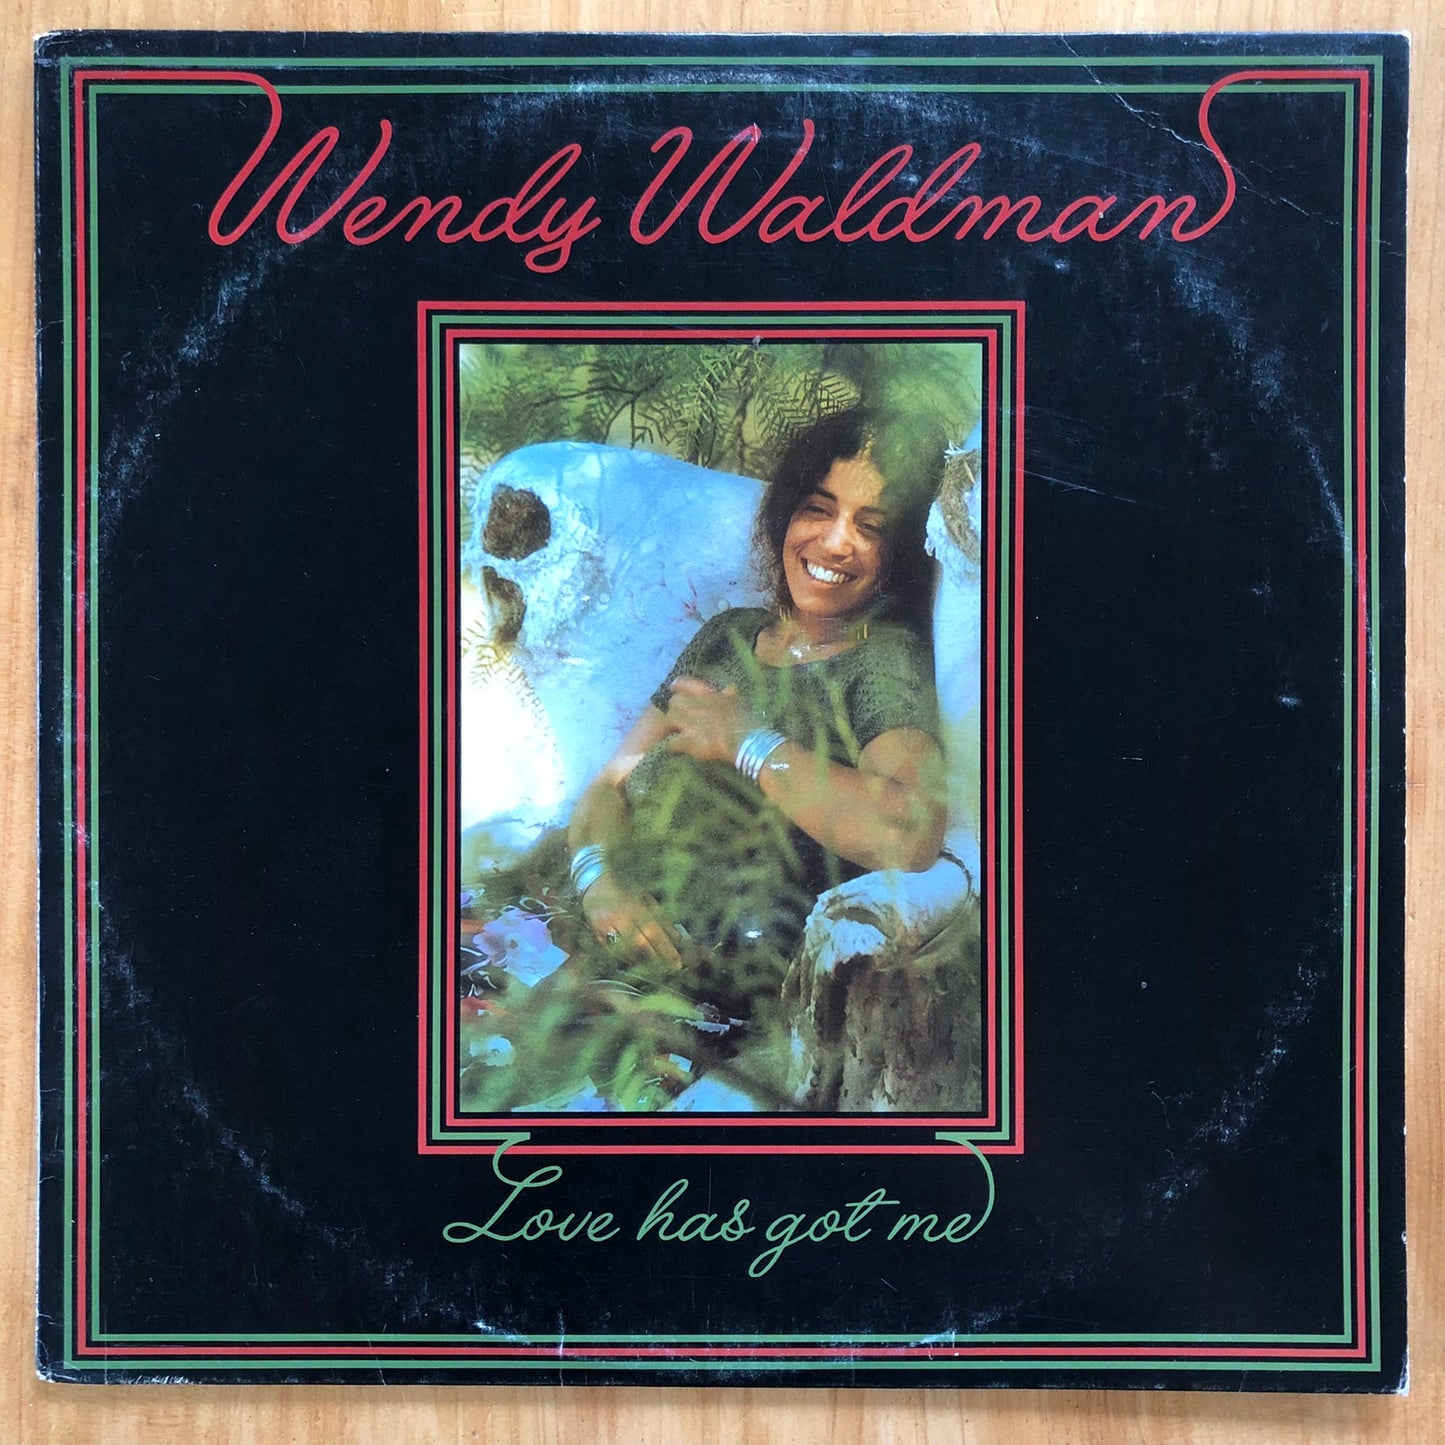 Wendy Waldman - Love Has Got Me